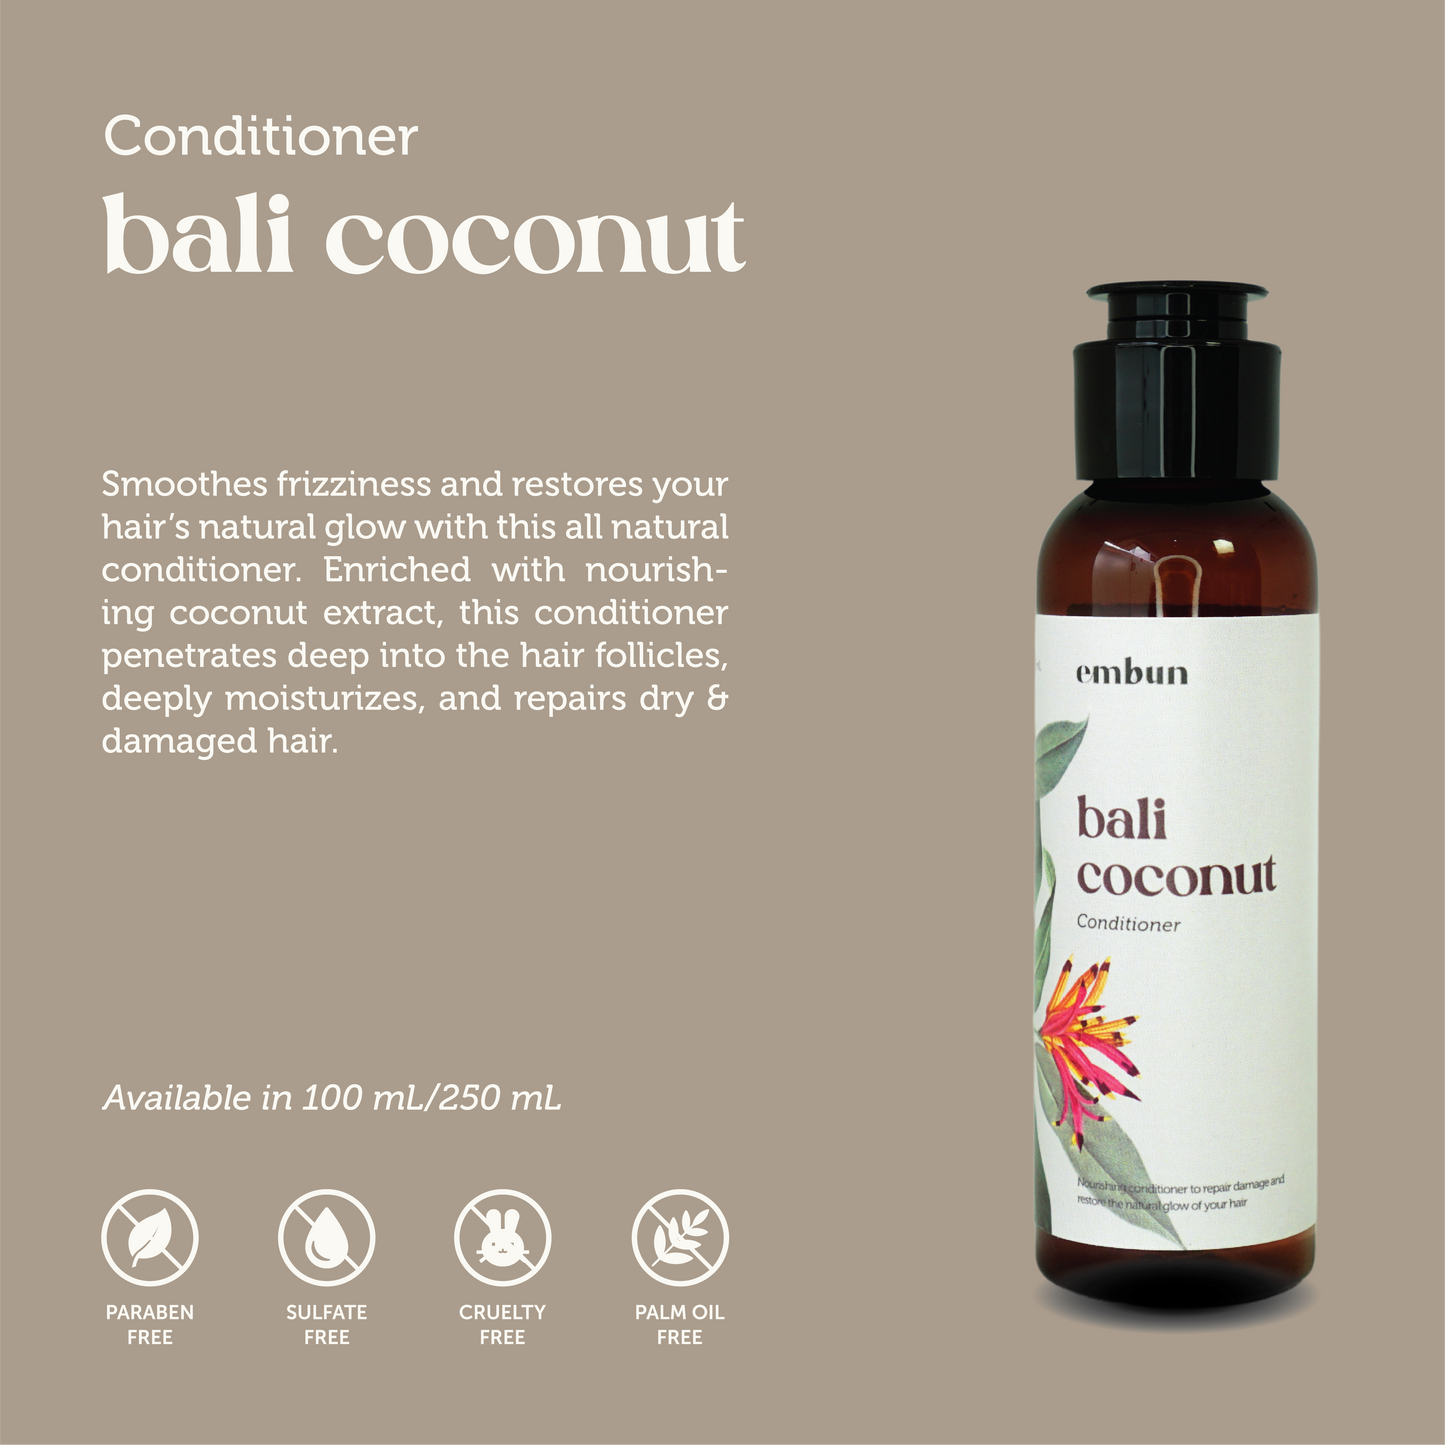 Conditioner Bali Coconut